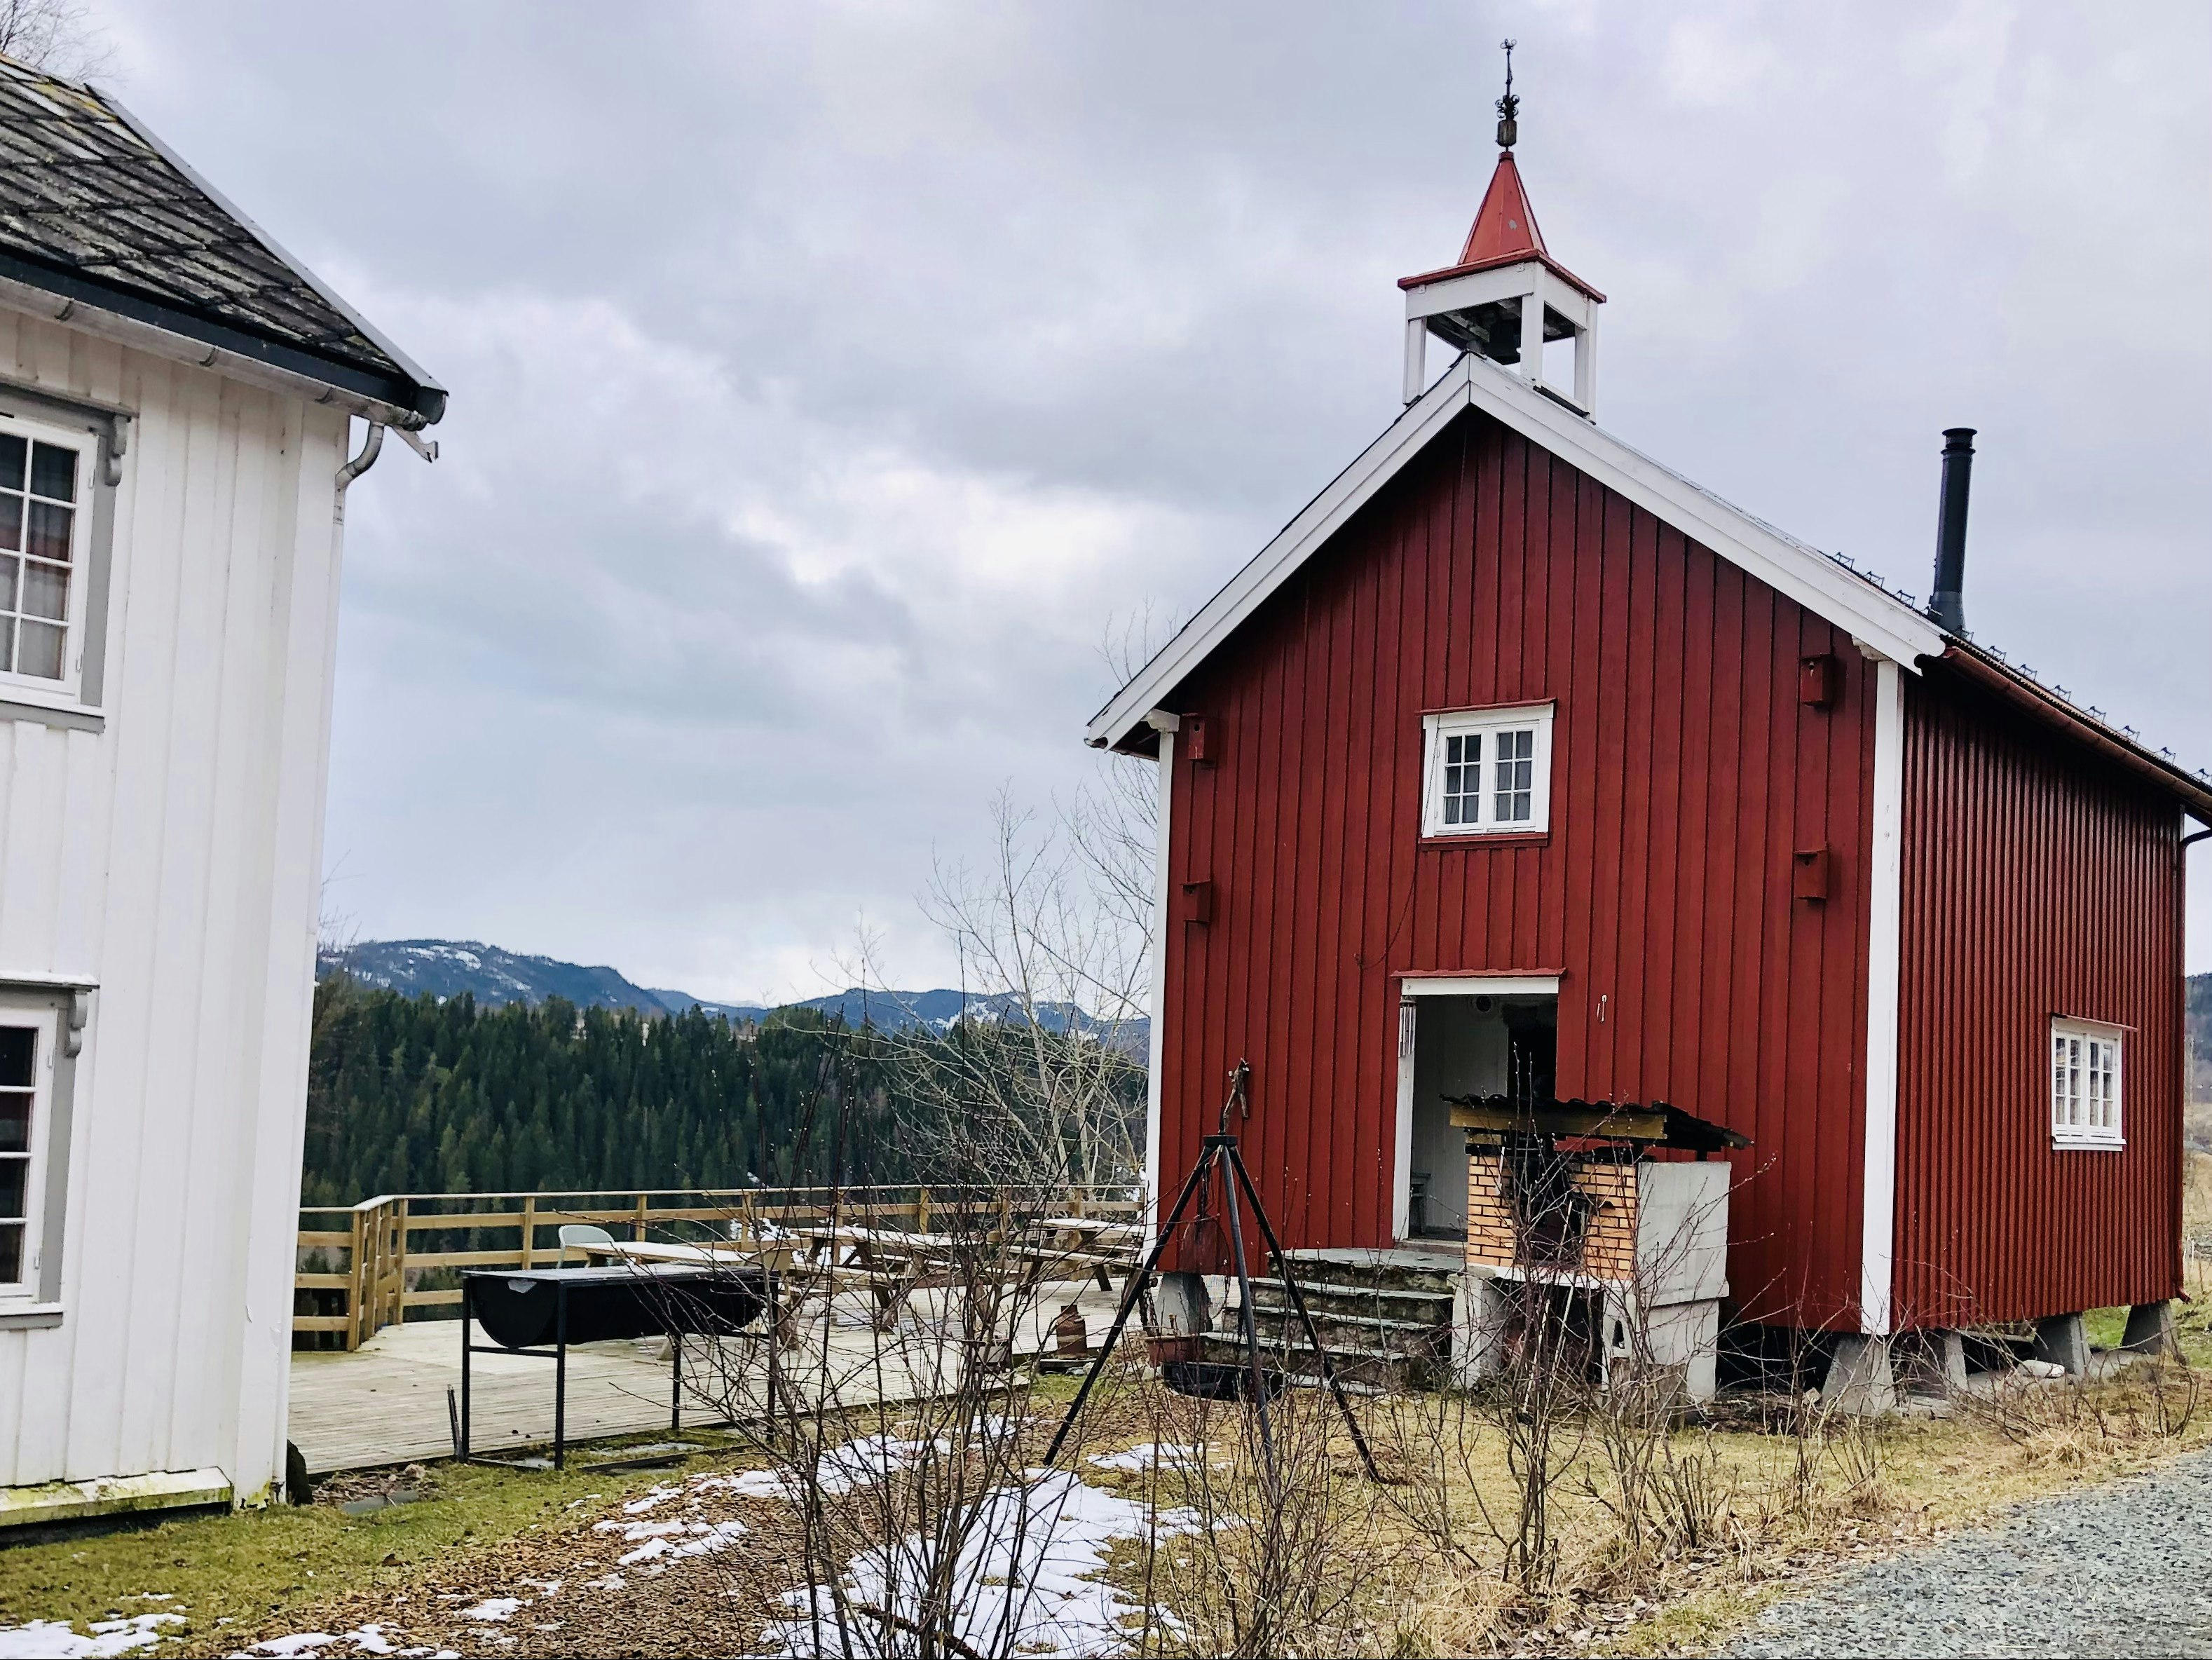 A red store house at Skølberg Søndre farm, Trøndelag, Norway